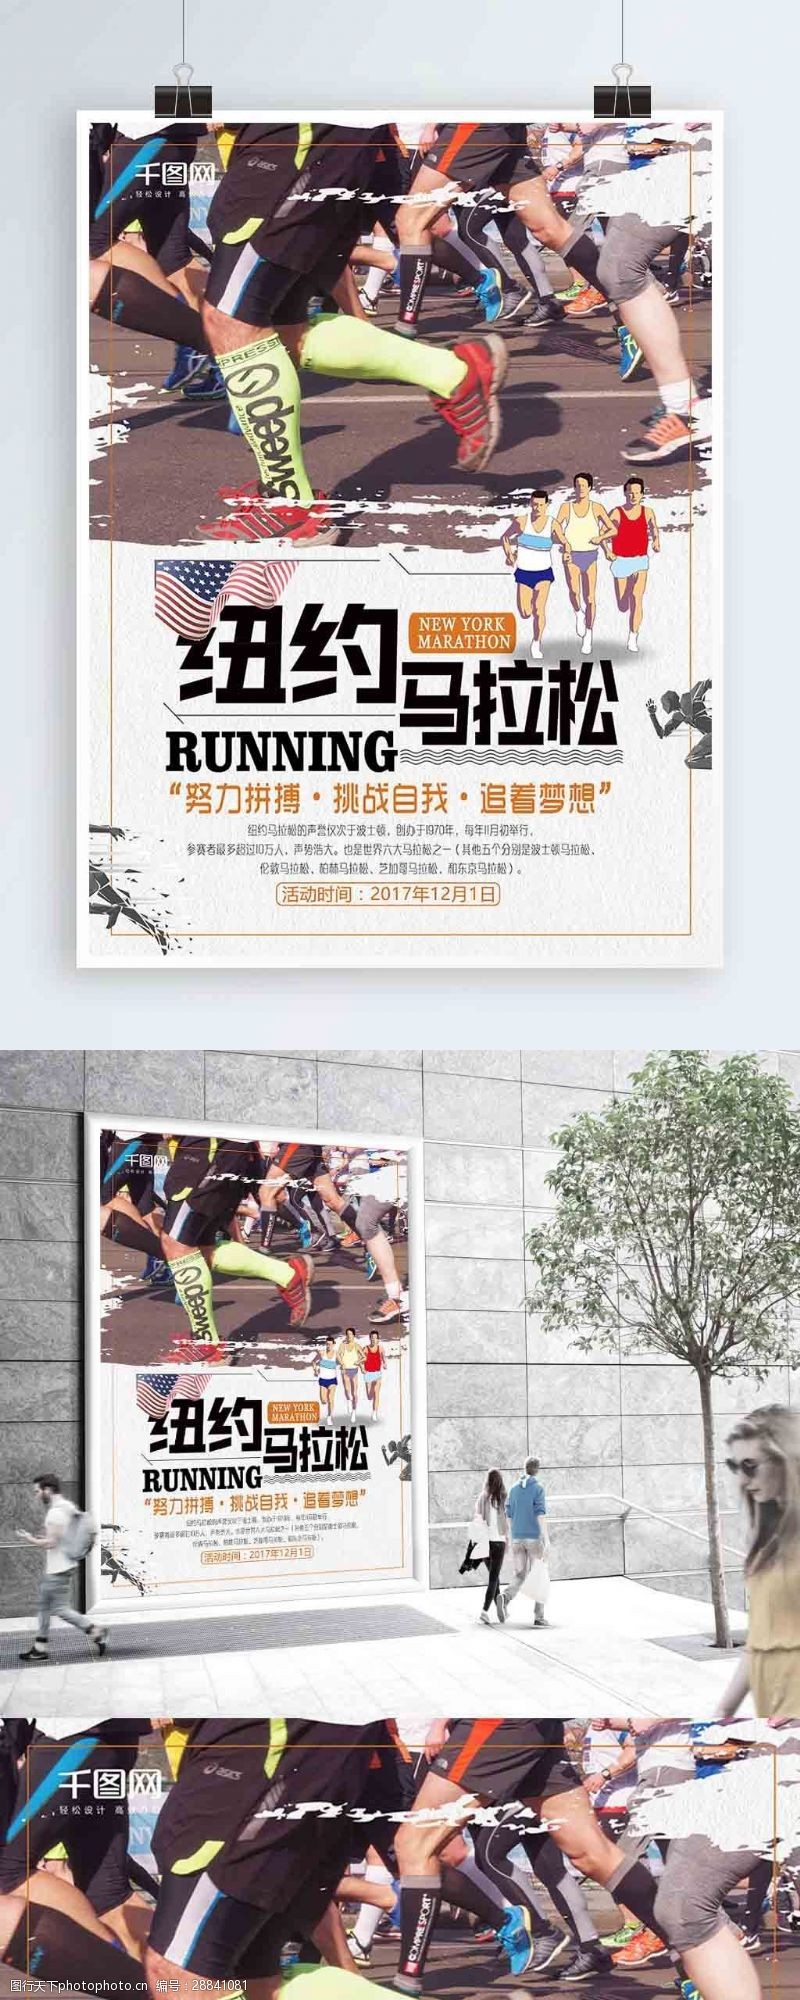 田径比赛创意纽约马拉松比赛宣传海报设计